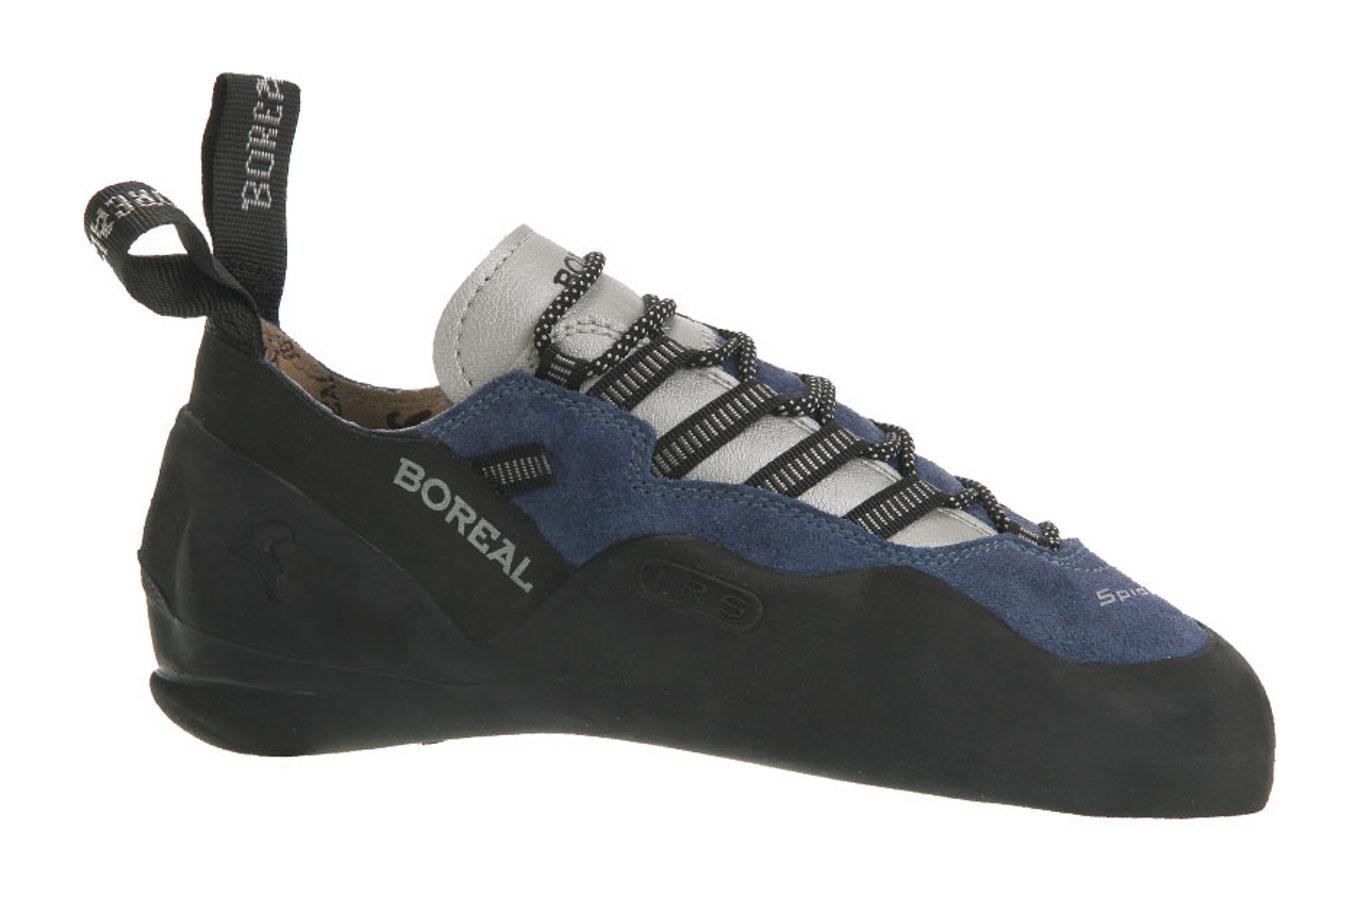 Foto Boreal Spider Zapatillas para escalada azul/negro, 46 foto 354057